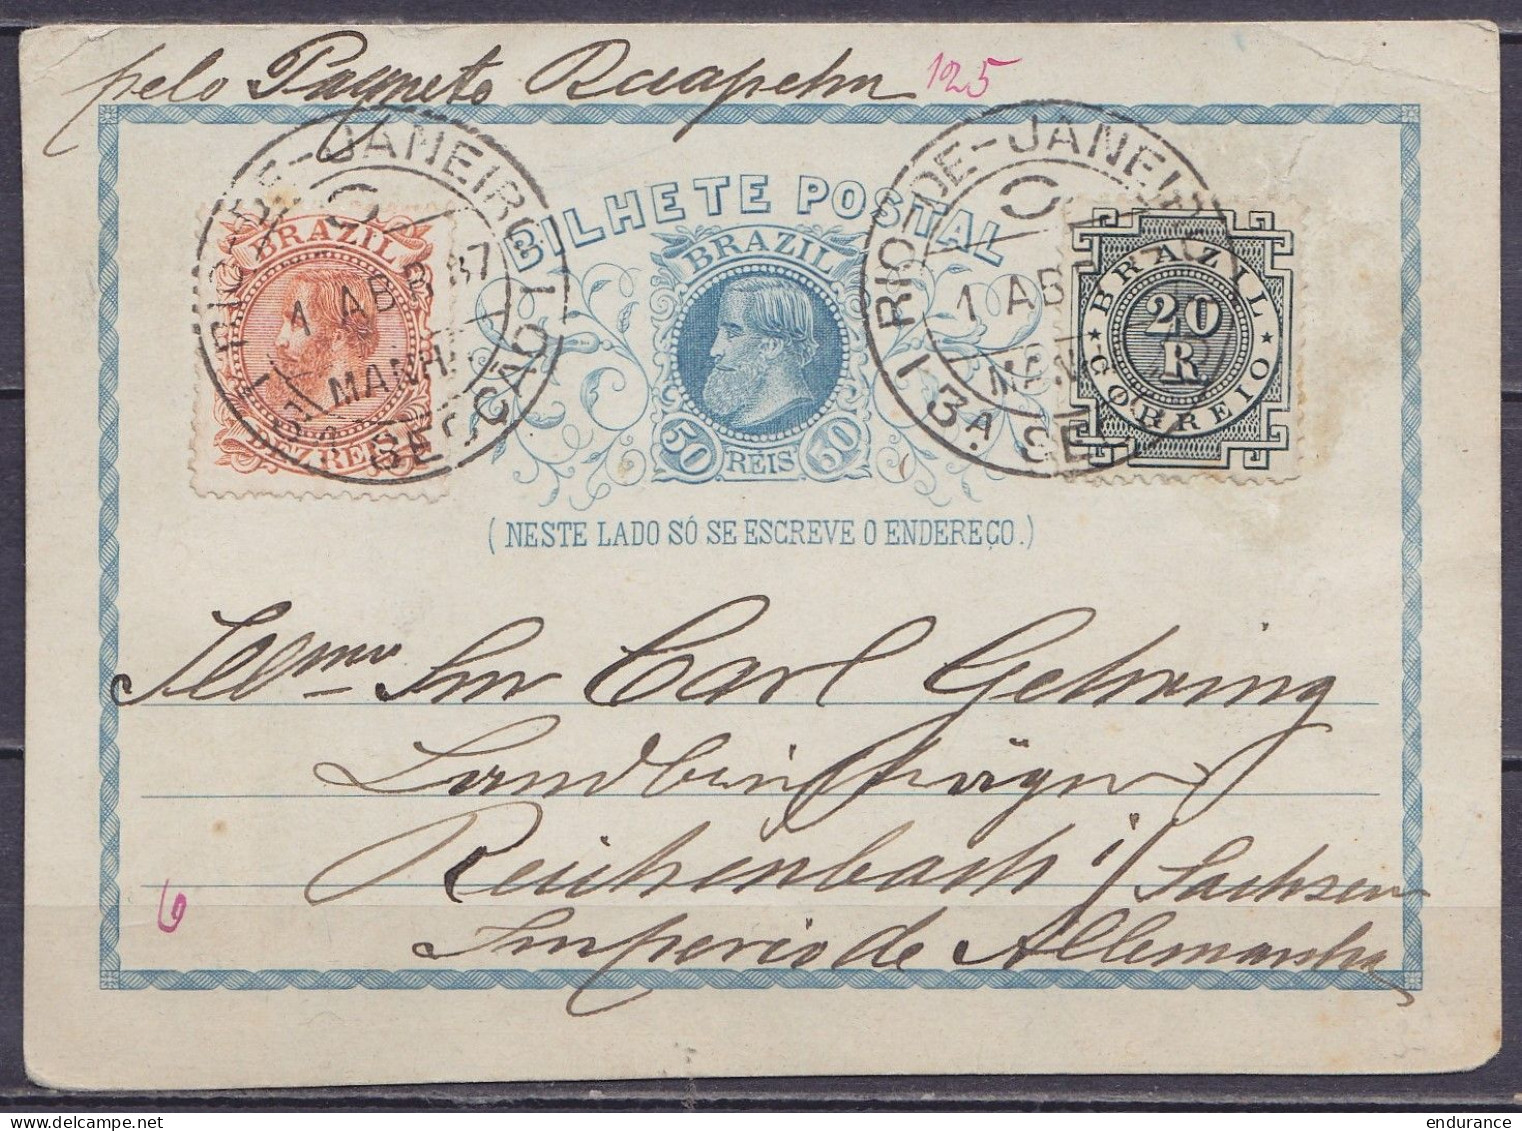 Brésil - EP CP Bilhete Postal 50R + 30R Càpt RIO DE JANEIRO /1 ABR 1887 Pour REICHENBACH Sachsen Allemagne - Covers & Documents